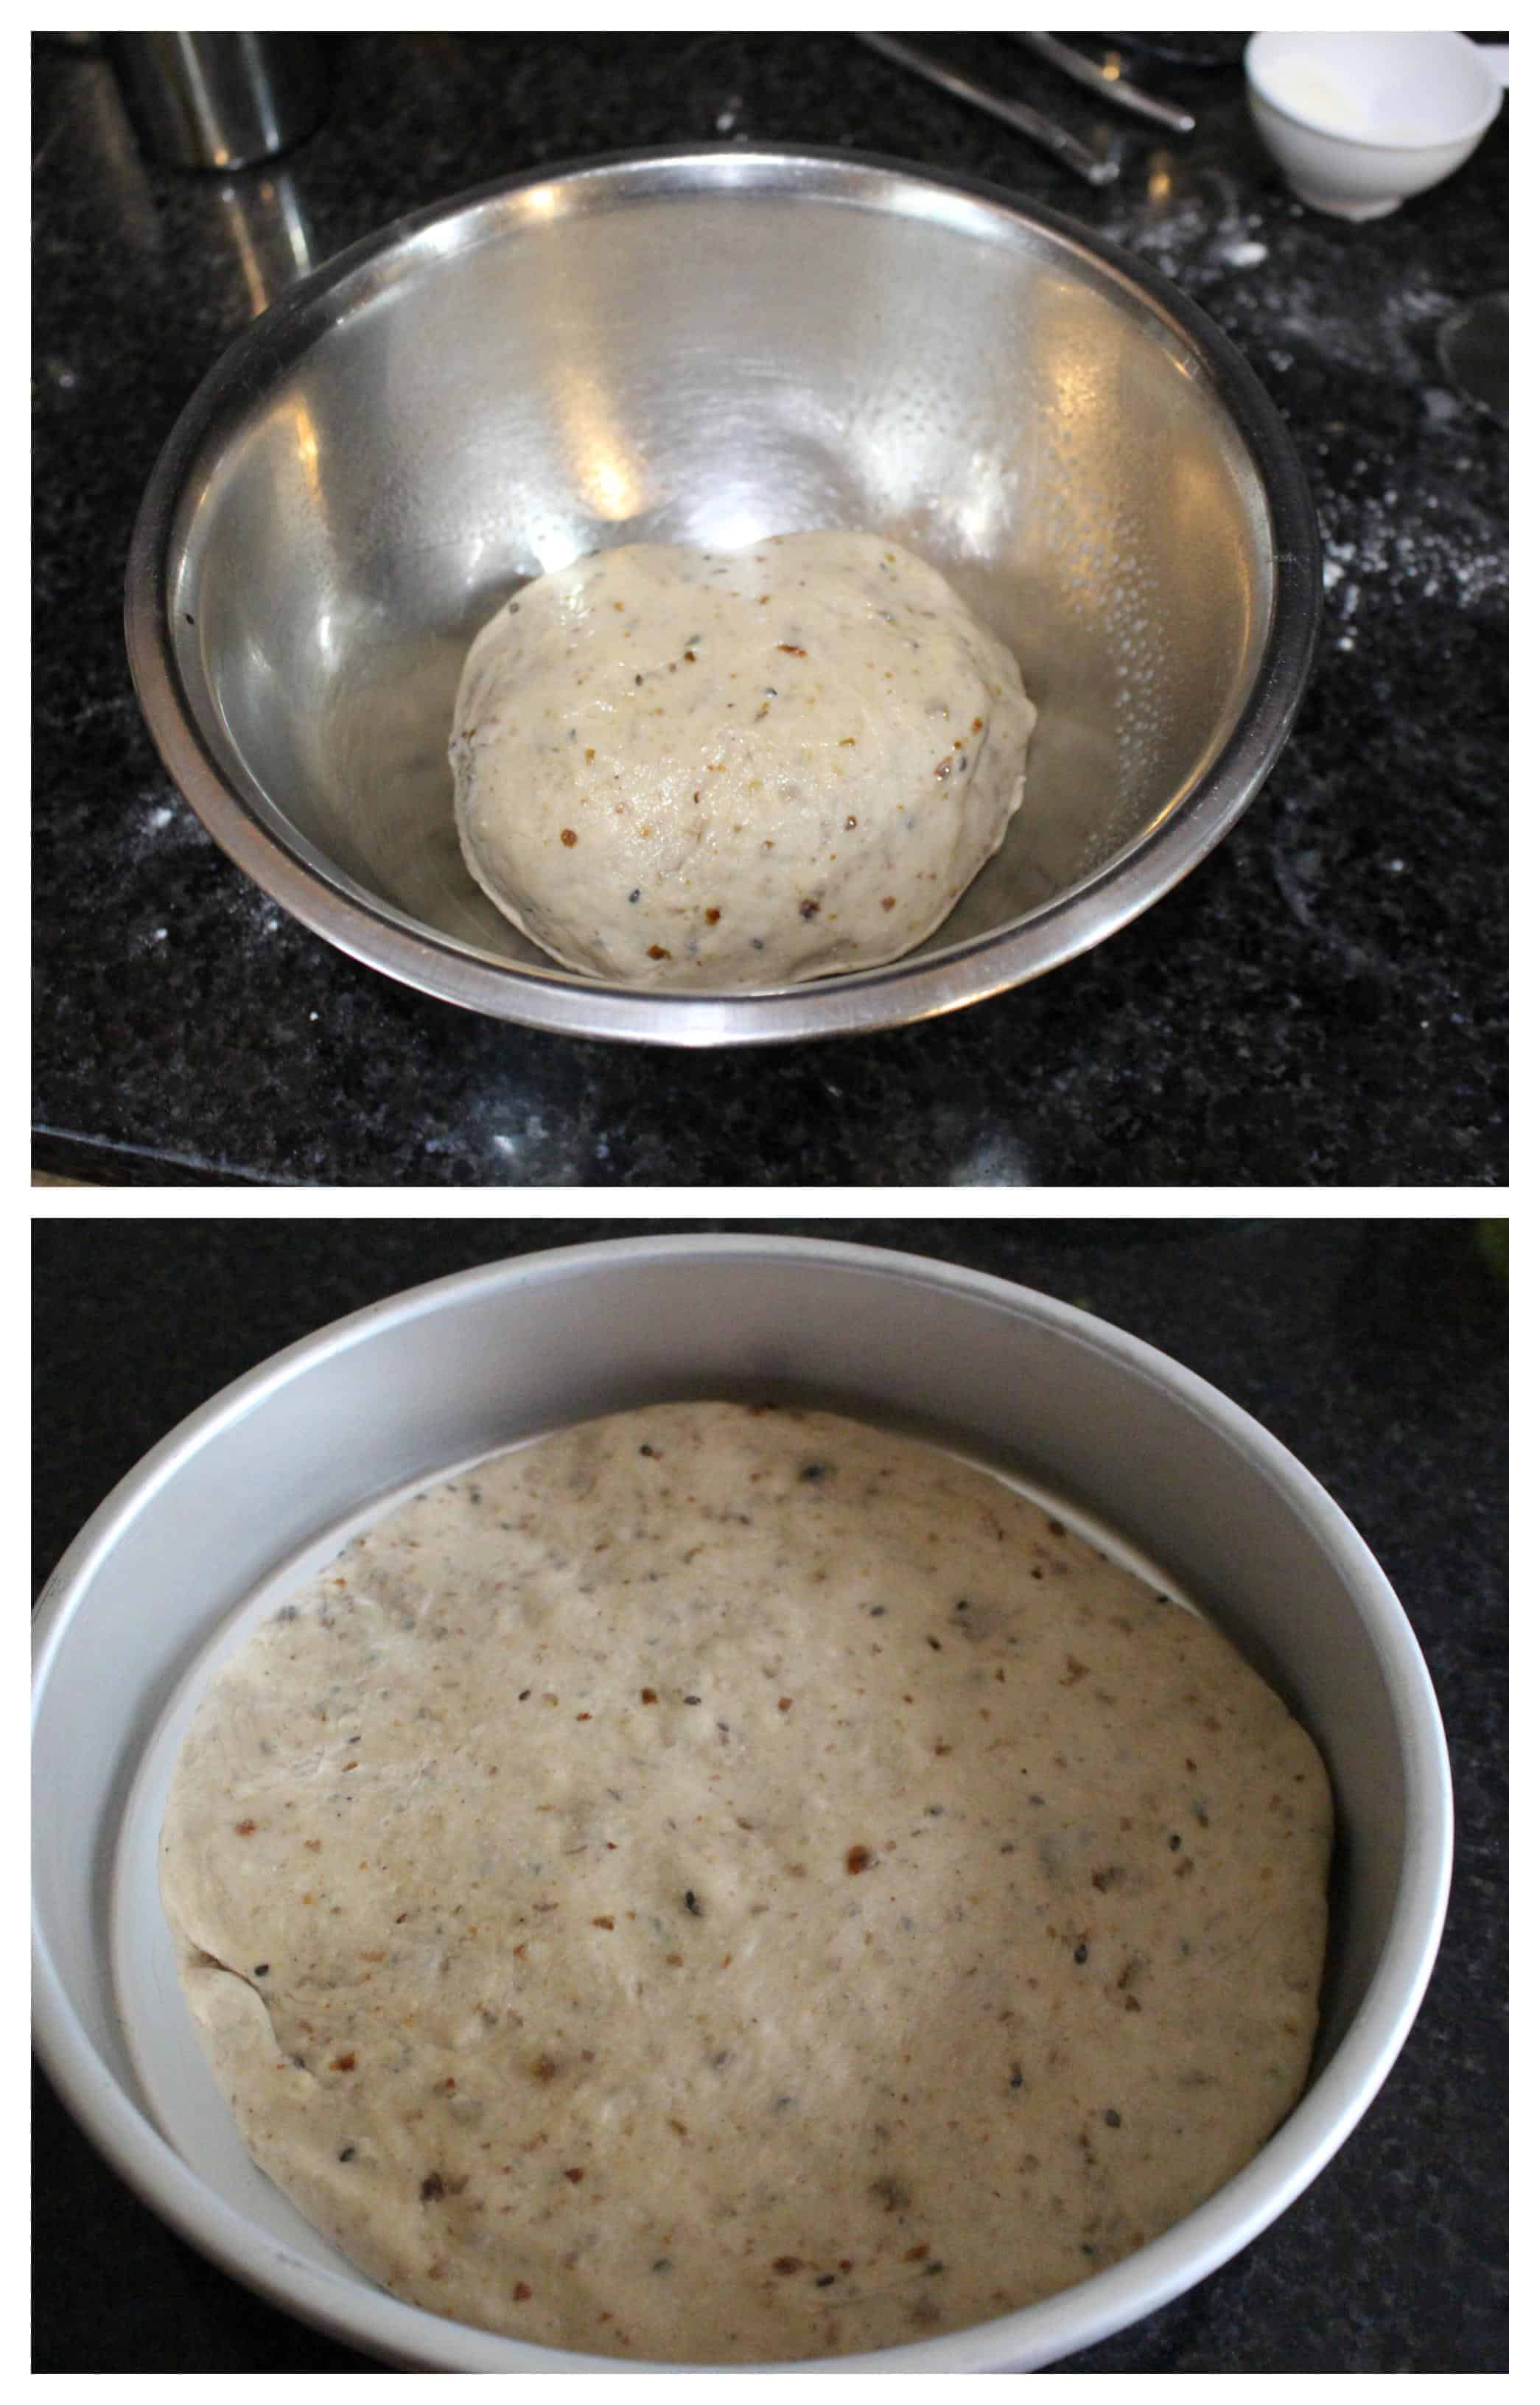 Ambasha dough rising